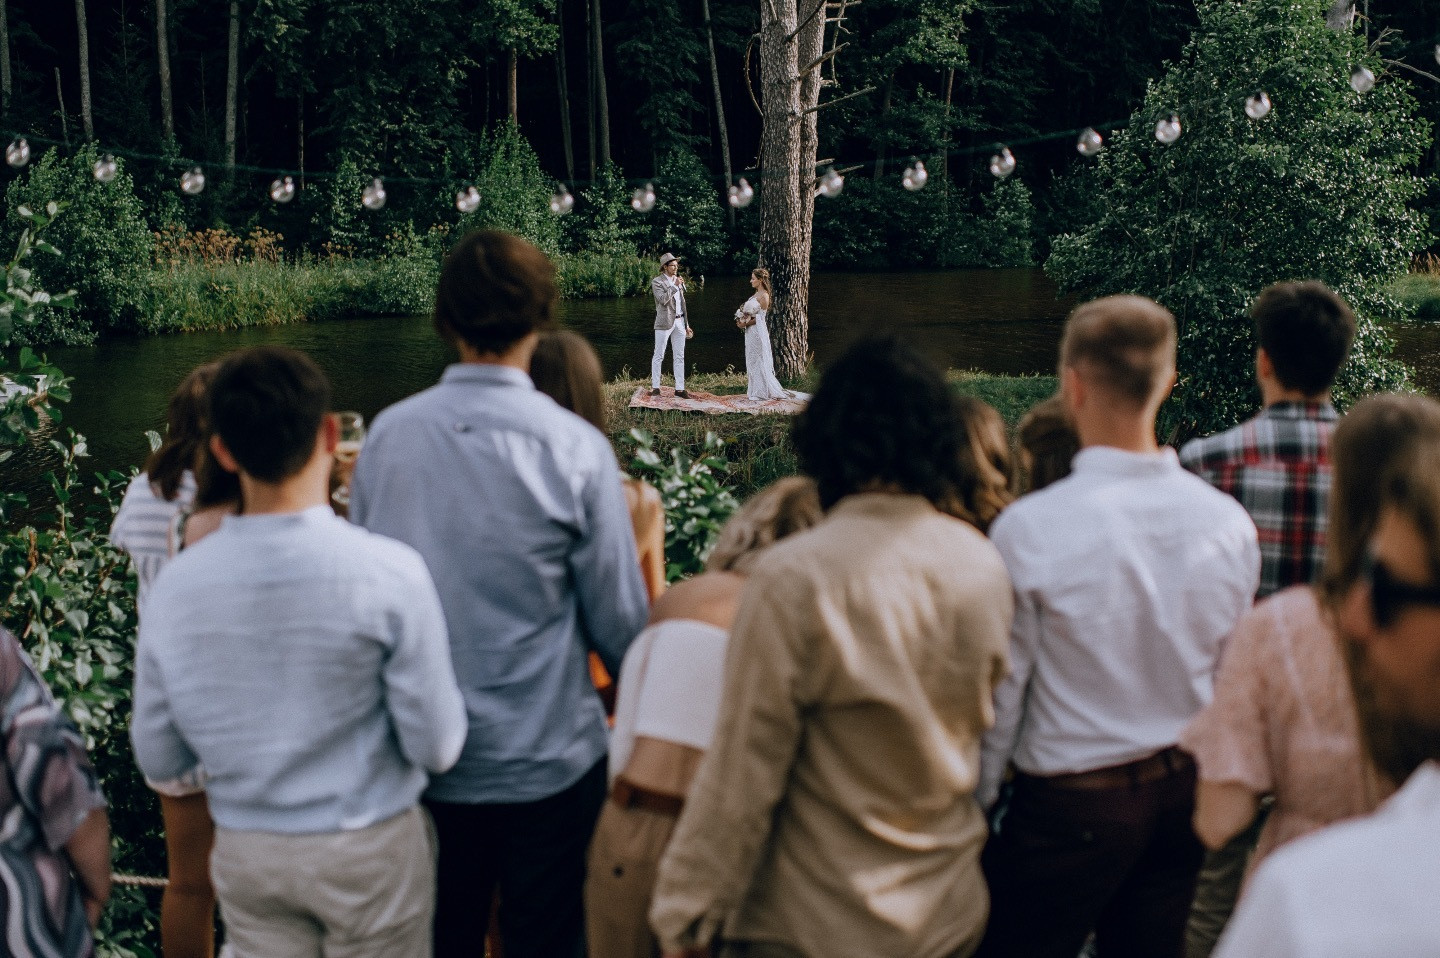 «Под открытым небом»: бохо и рустик свадьба посреди озера